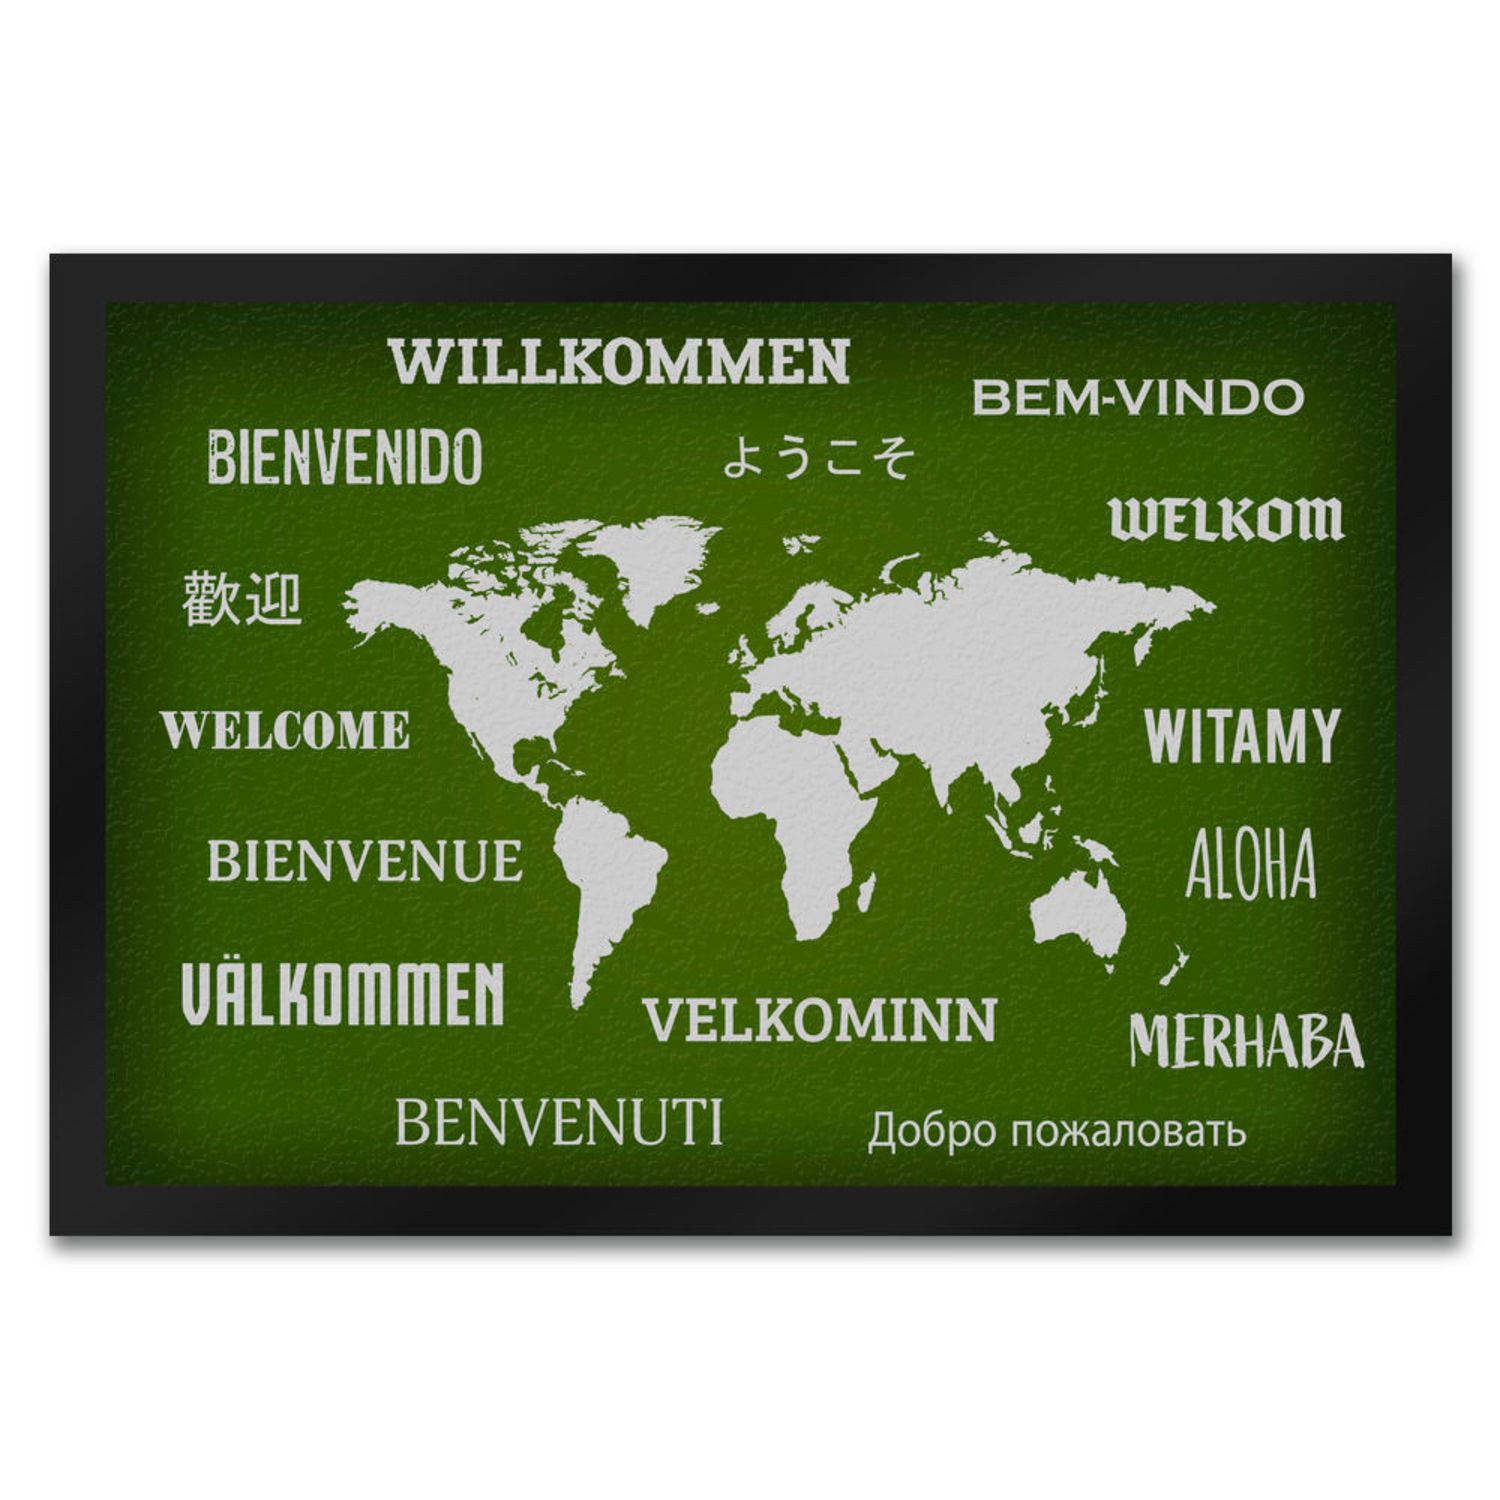 Fußmatte Willkommen Fußmatte in verschiedenen Sprachen grün Länder Land Welt, speecheese